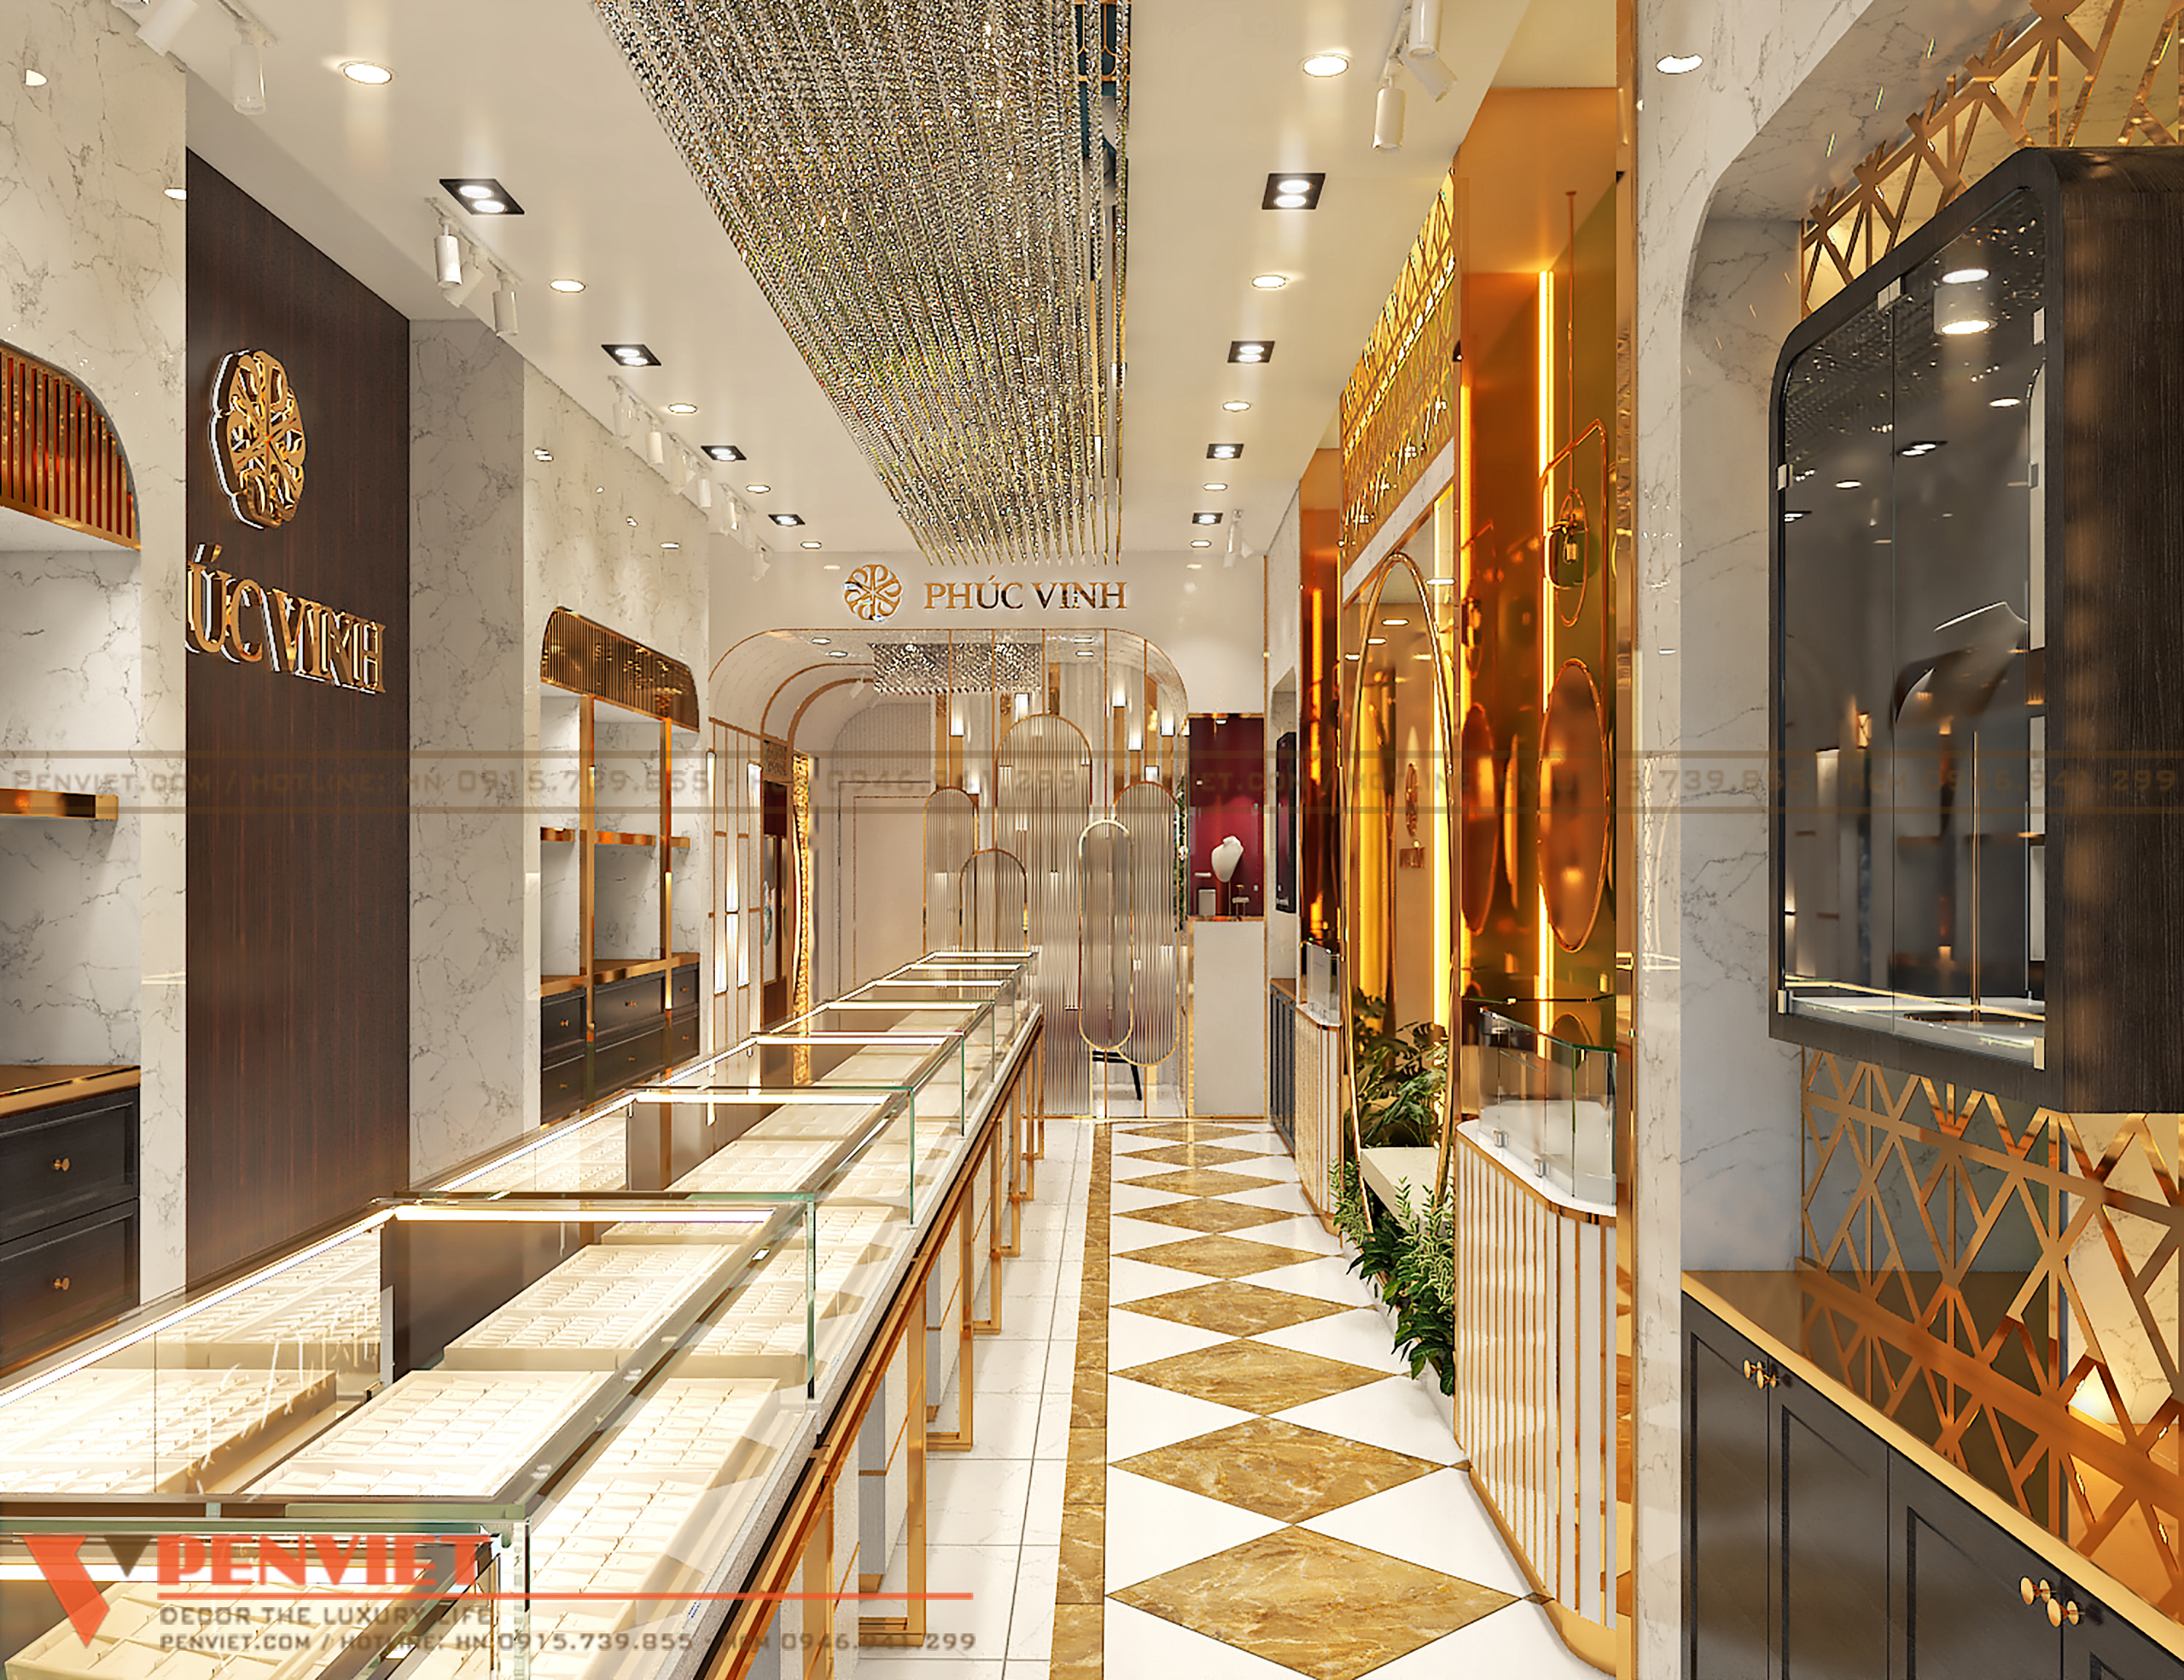 Thiết kế tiệm vàng theo phong cách hiện đại